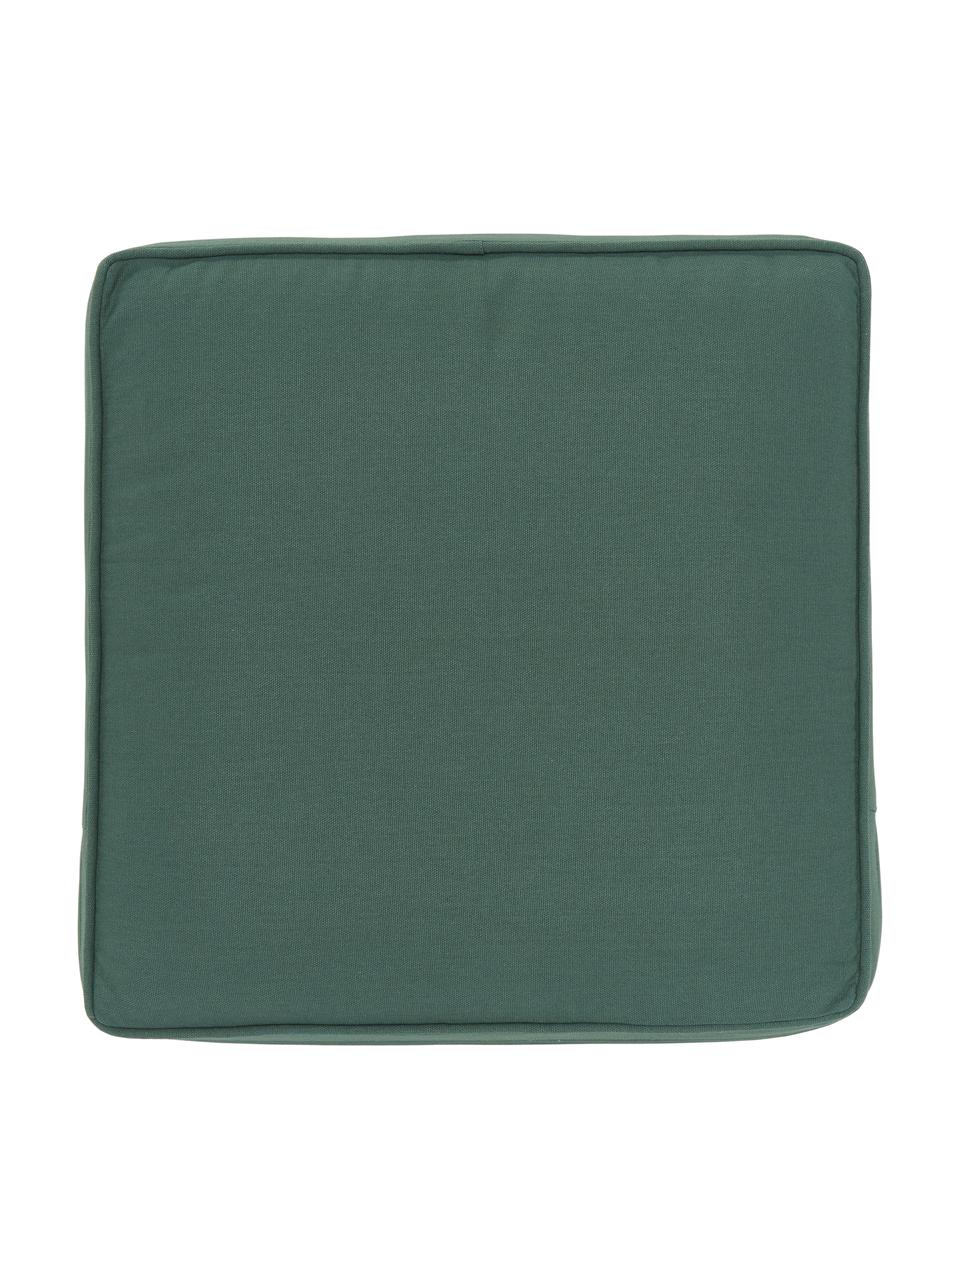 Cojín para silla alto de algodón Zoey, Funda: 100% algodón, Verde oscuro, An 40 x L 40 cm